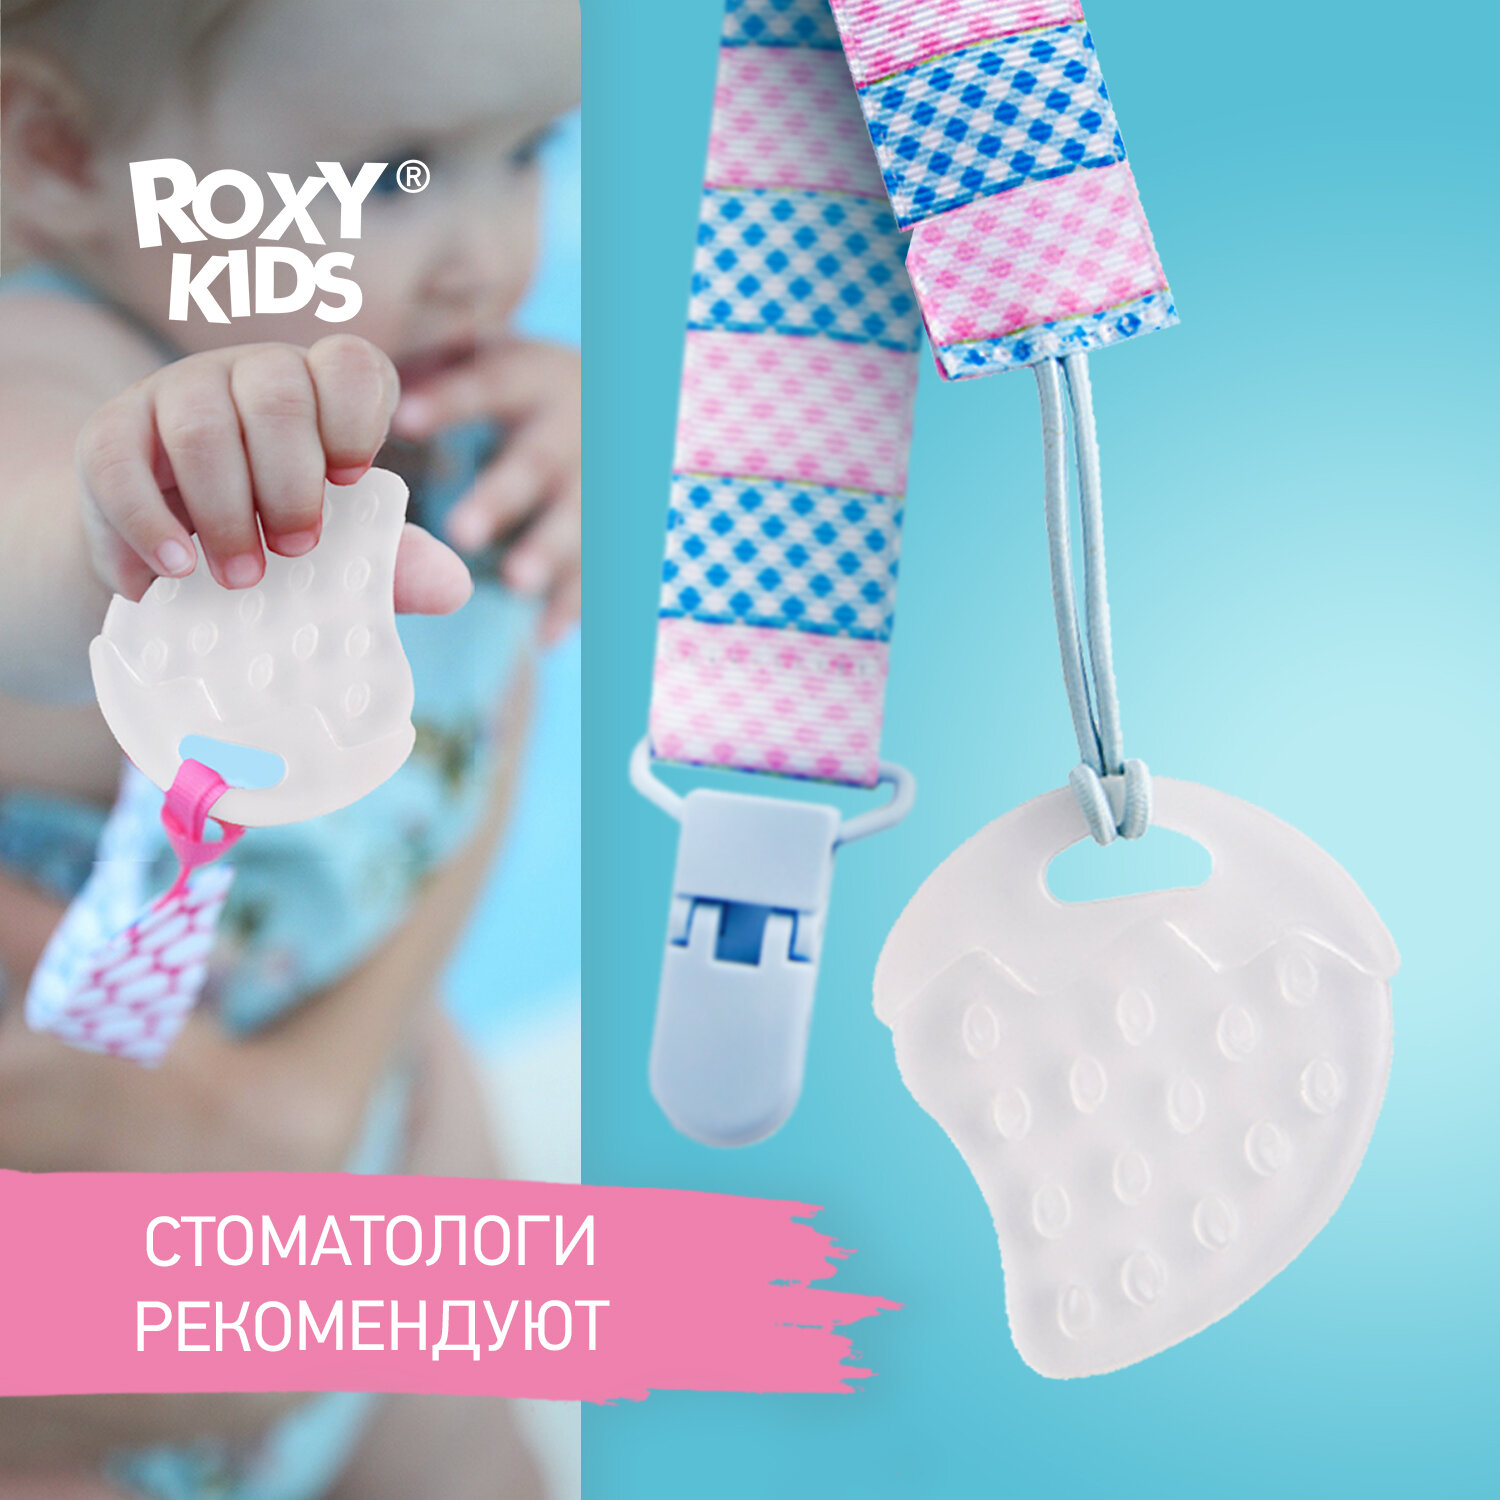 ROXY-KIDS Прорезыватель на держателе ROXY-KIDS. Цвет голубой-розовый (клеточка).